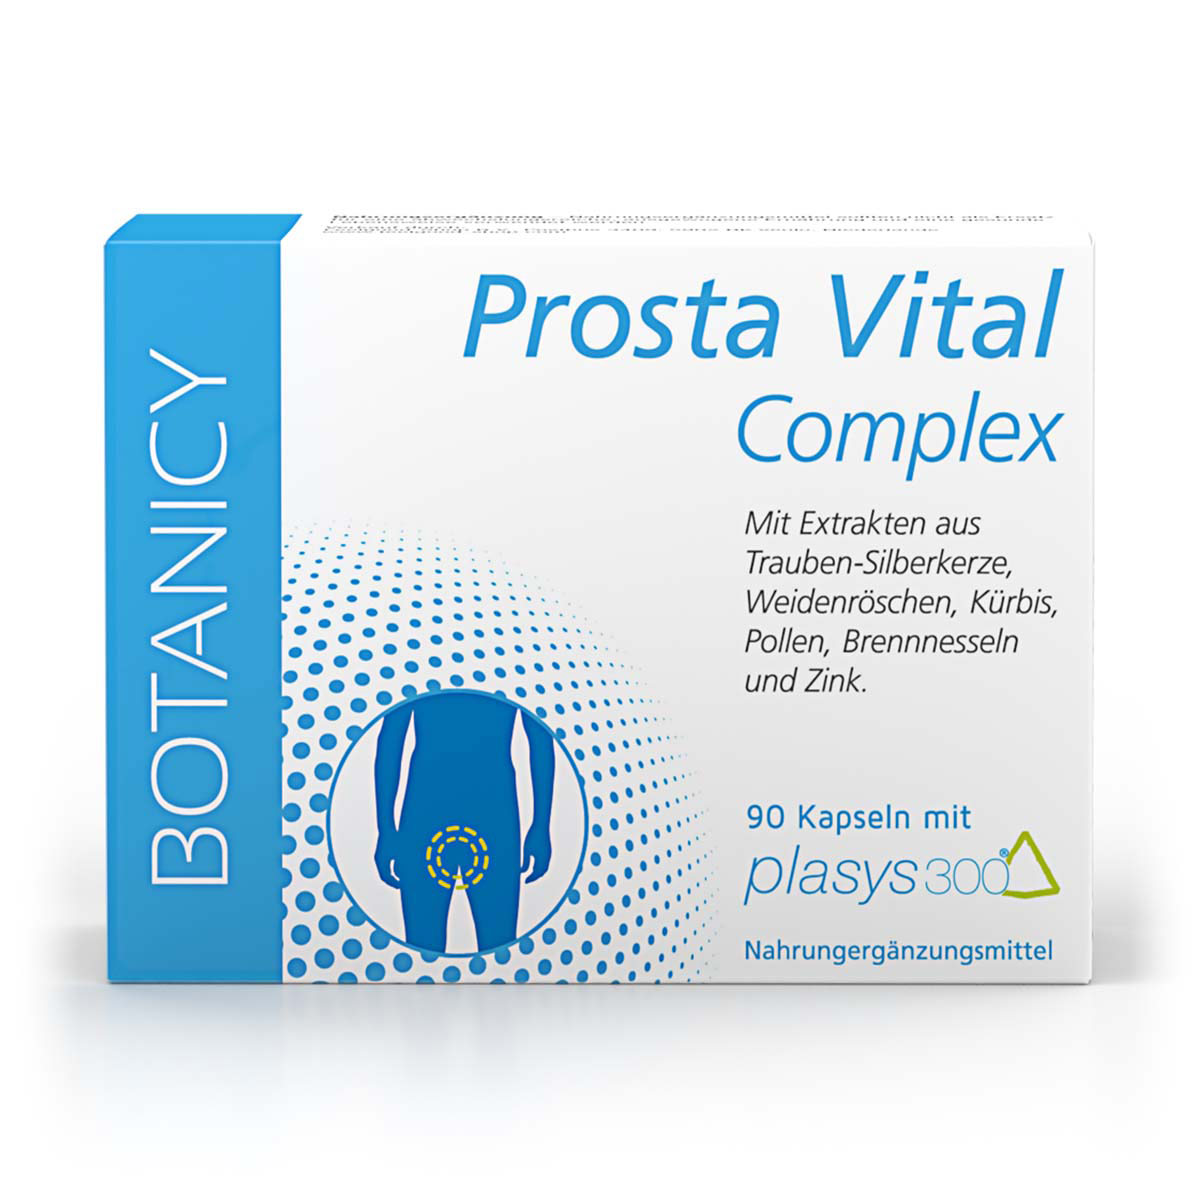 PROSTA VITAL Complex mit Plasys 300